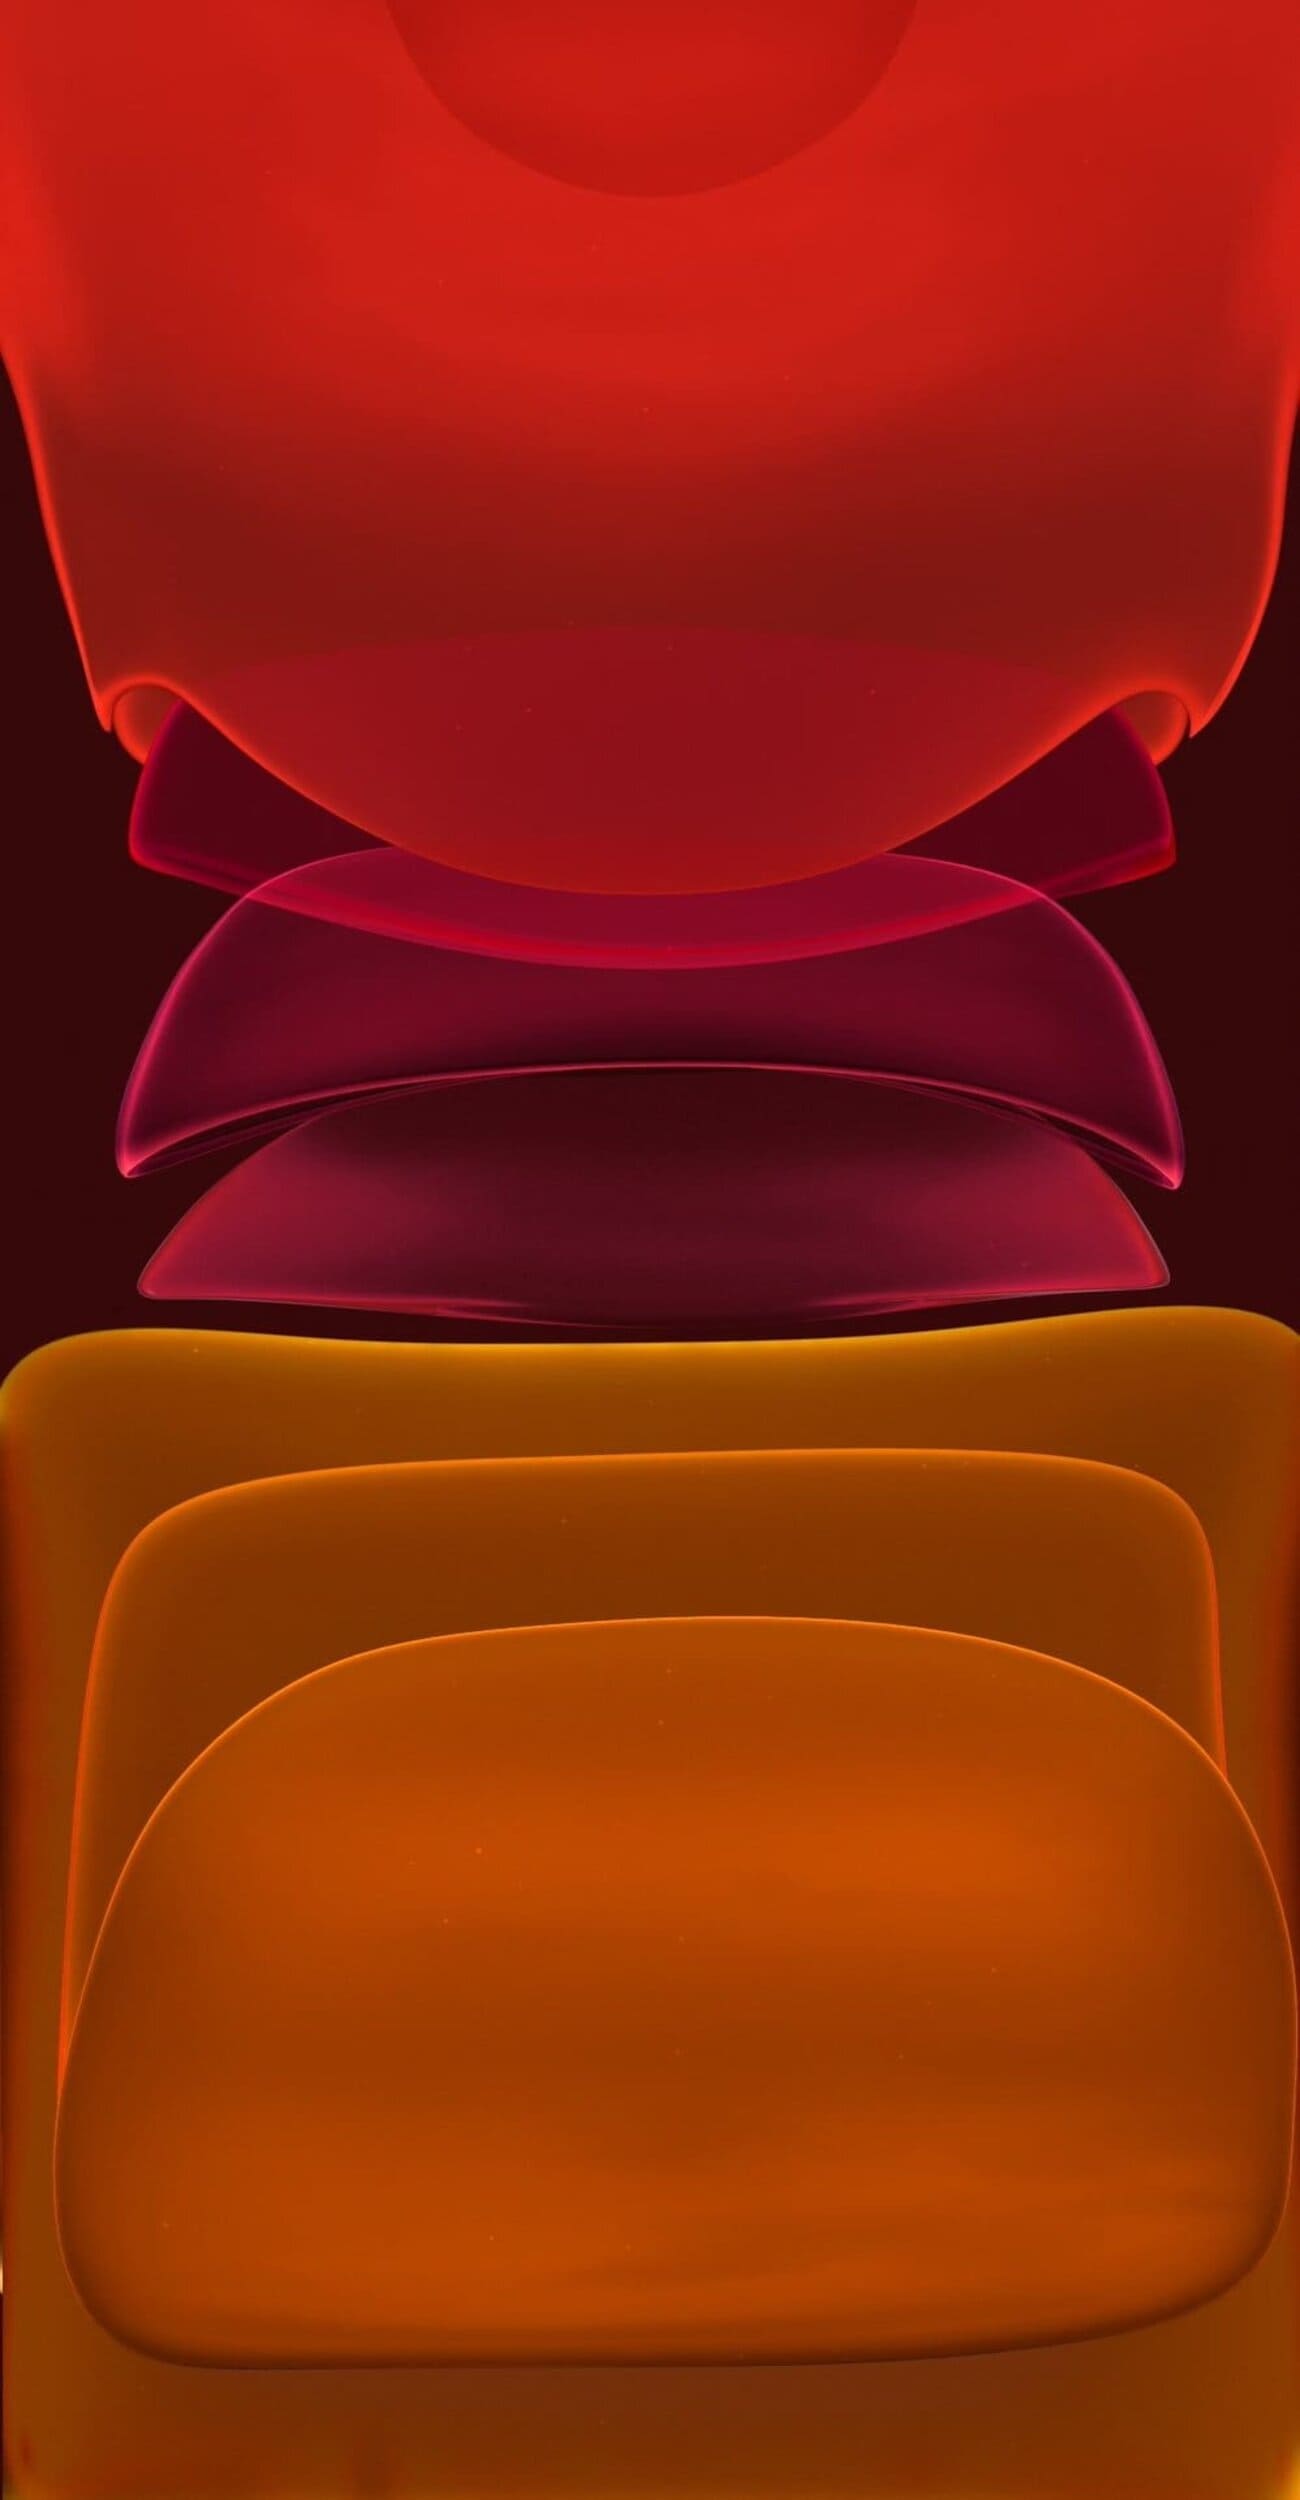 خلفية من اجمل خلفيات ايفون 11 اصلية حمراء وبرتقالية بجودة HD